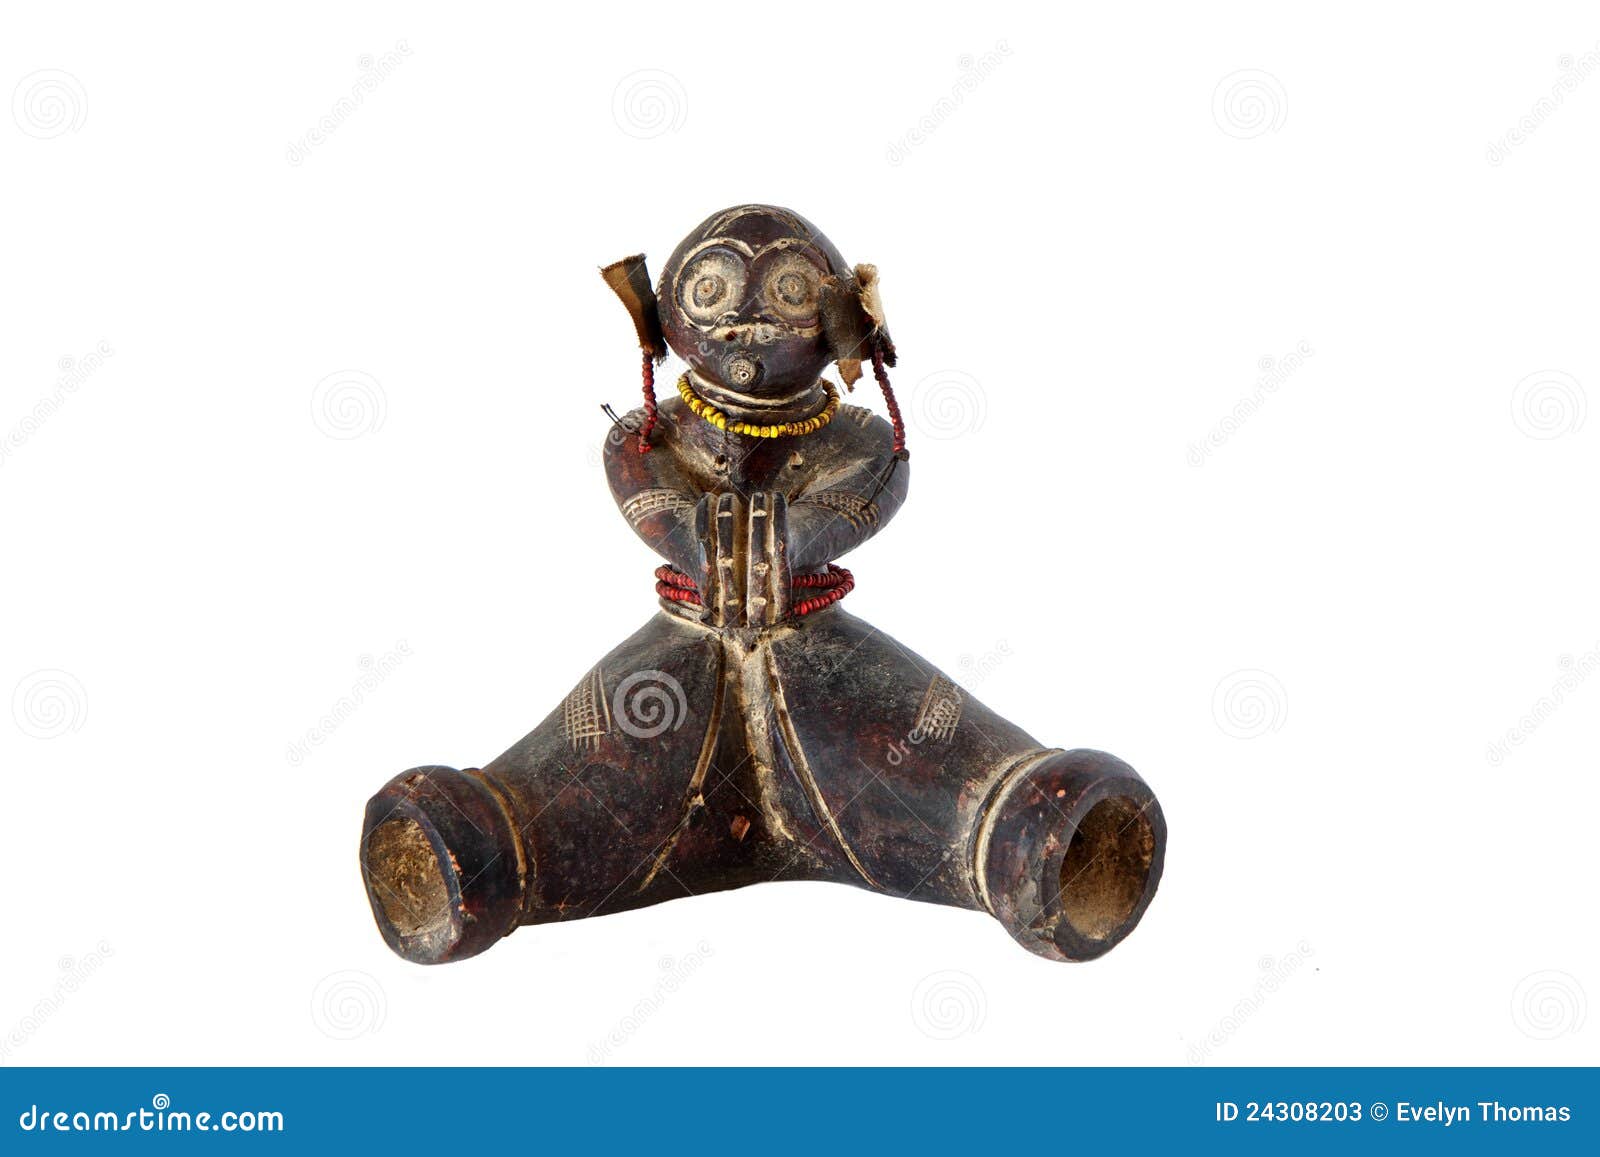 african artifact